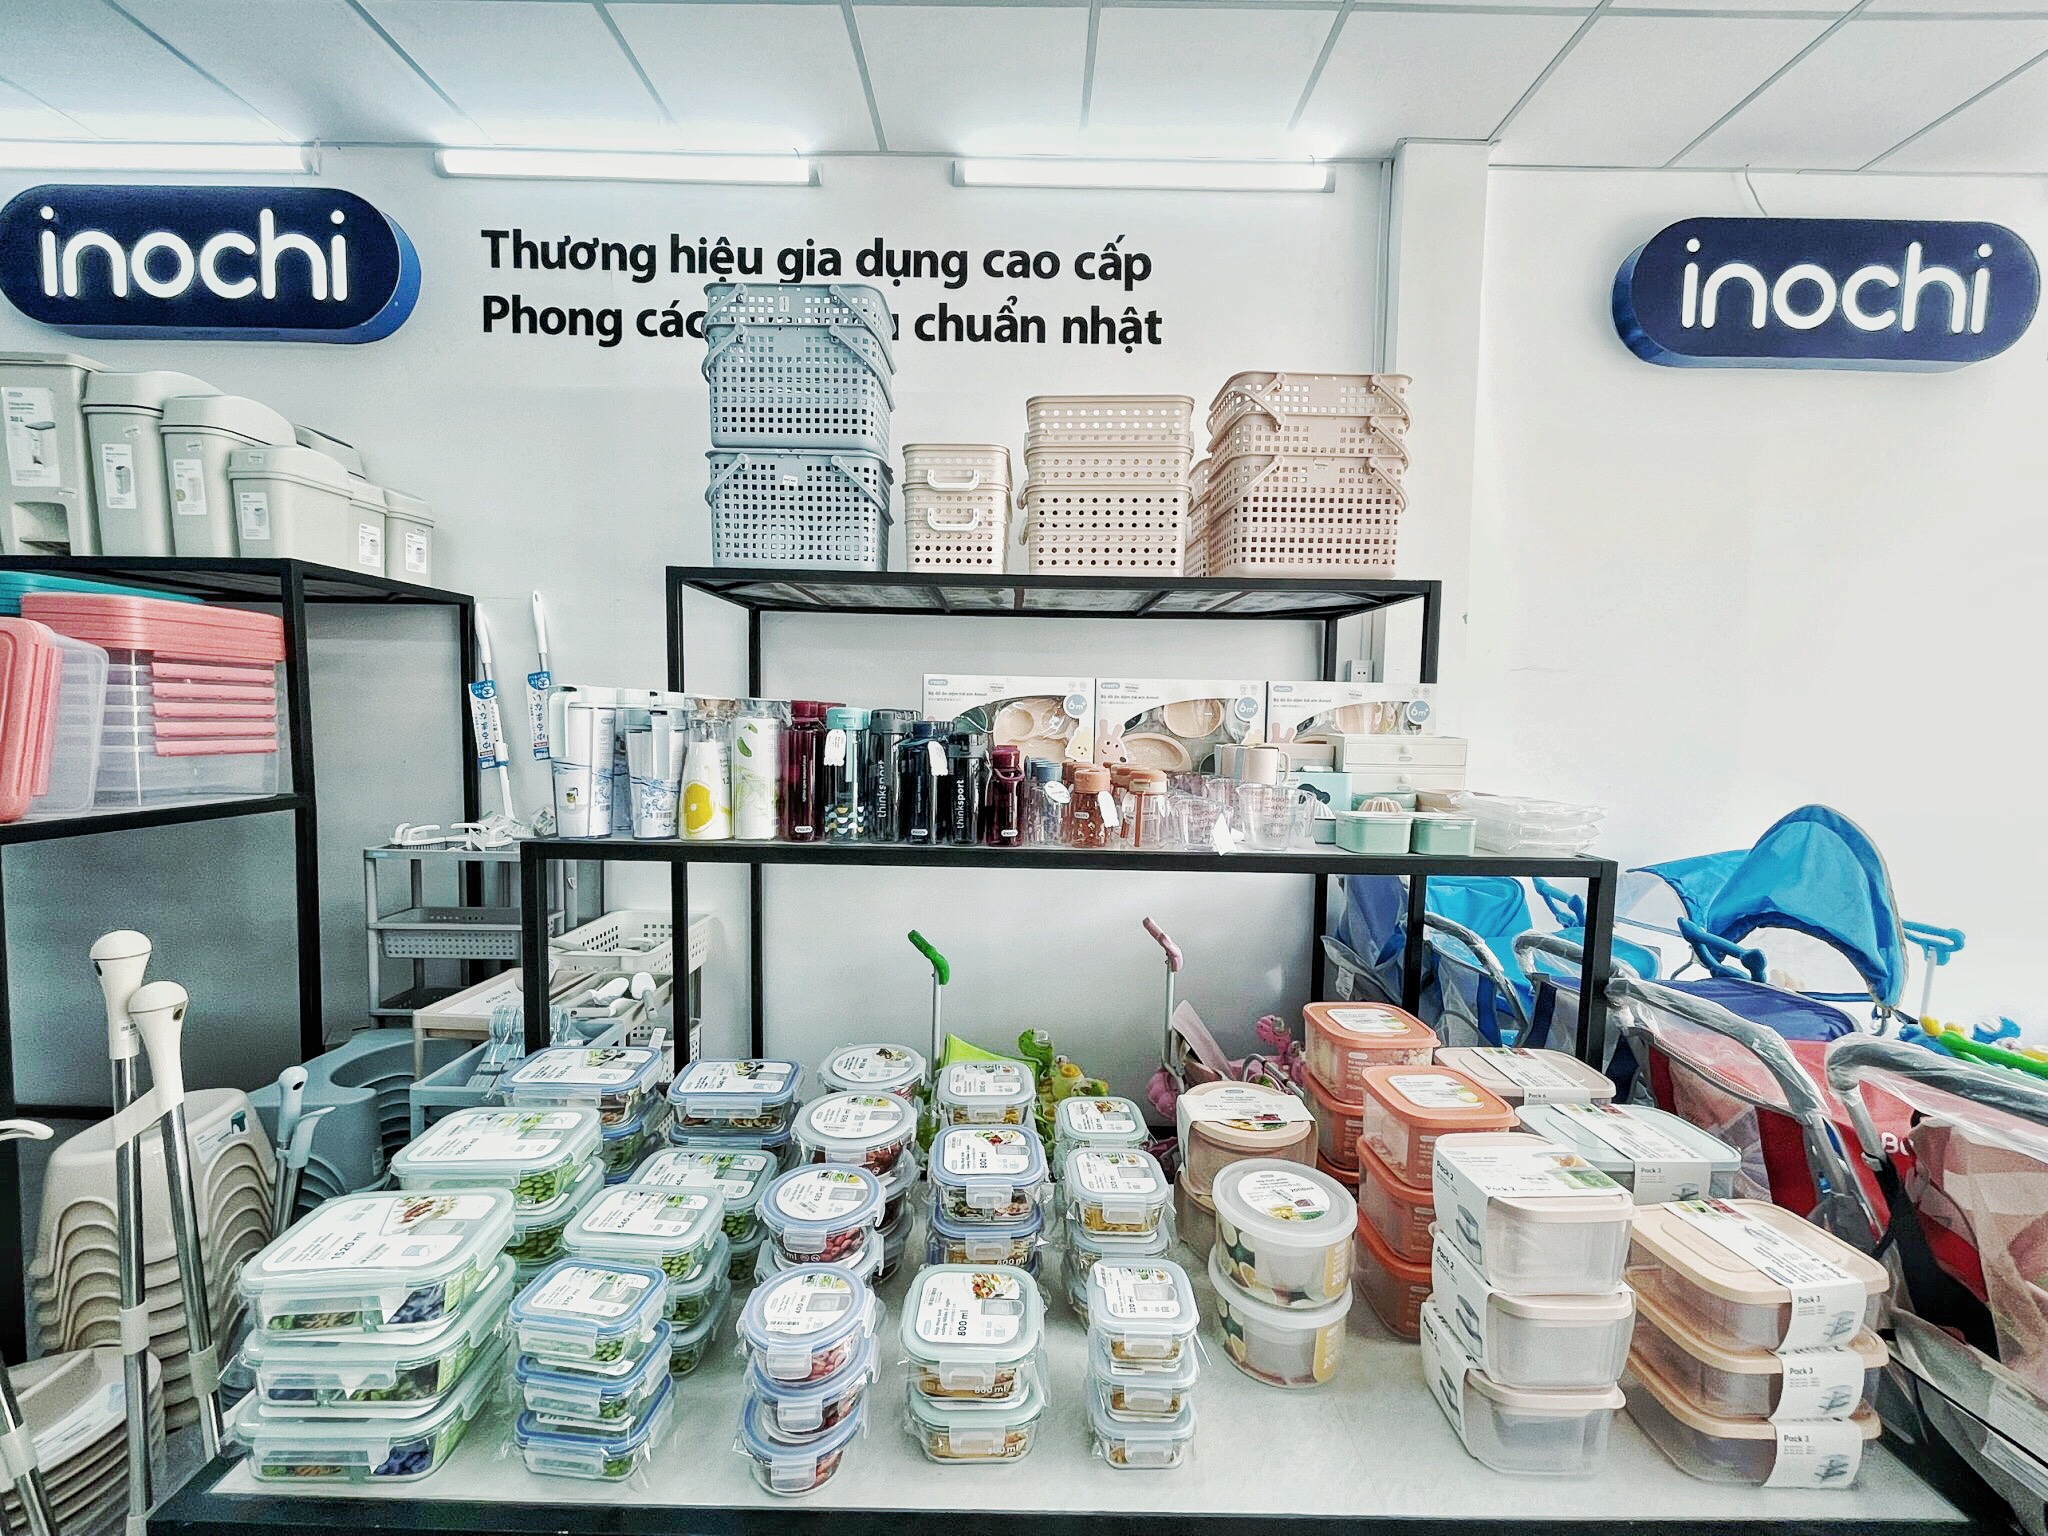 Nơi bán sản phẩm Inochi tại Phan Thiết